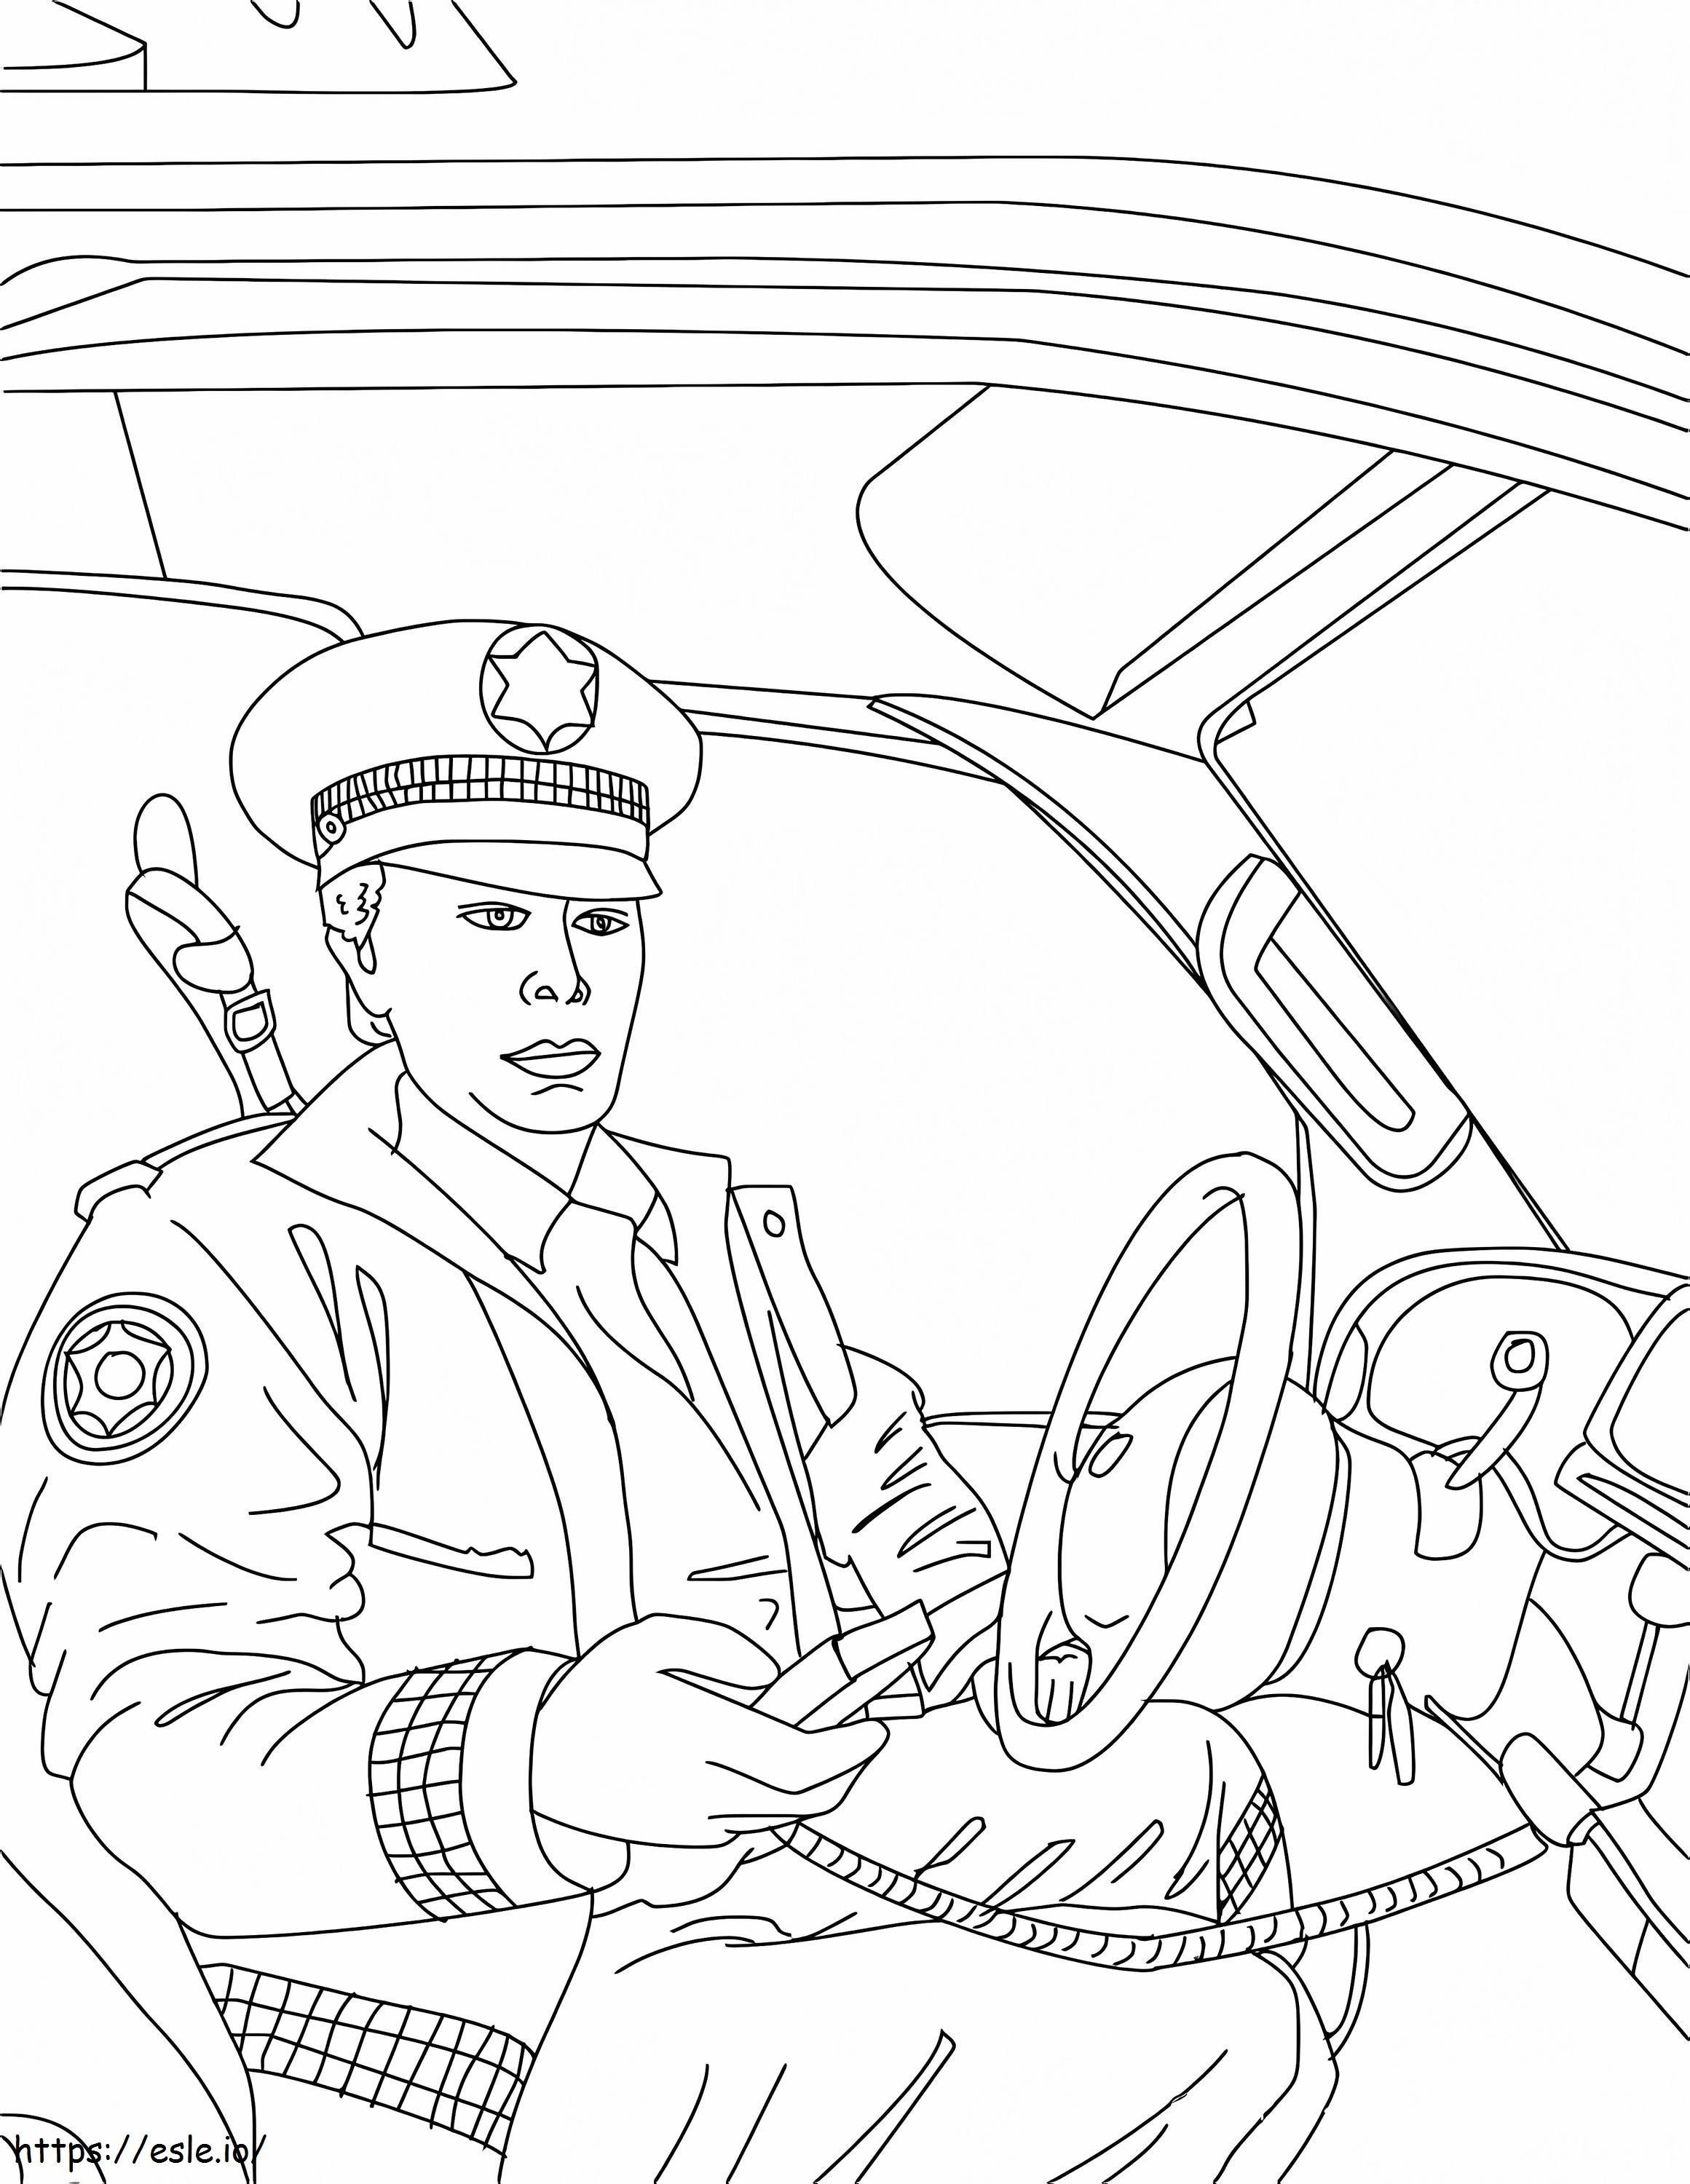 Polizei in seinem Polizeiauto ausmalbilder